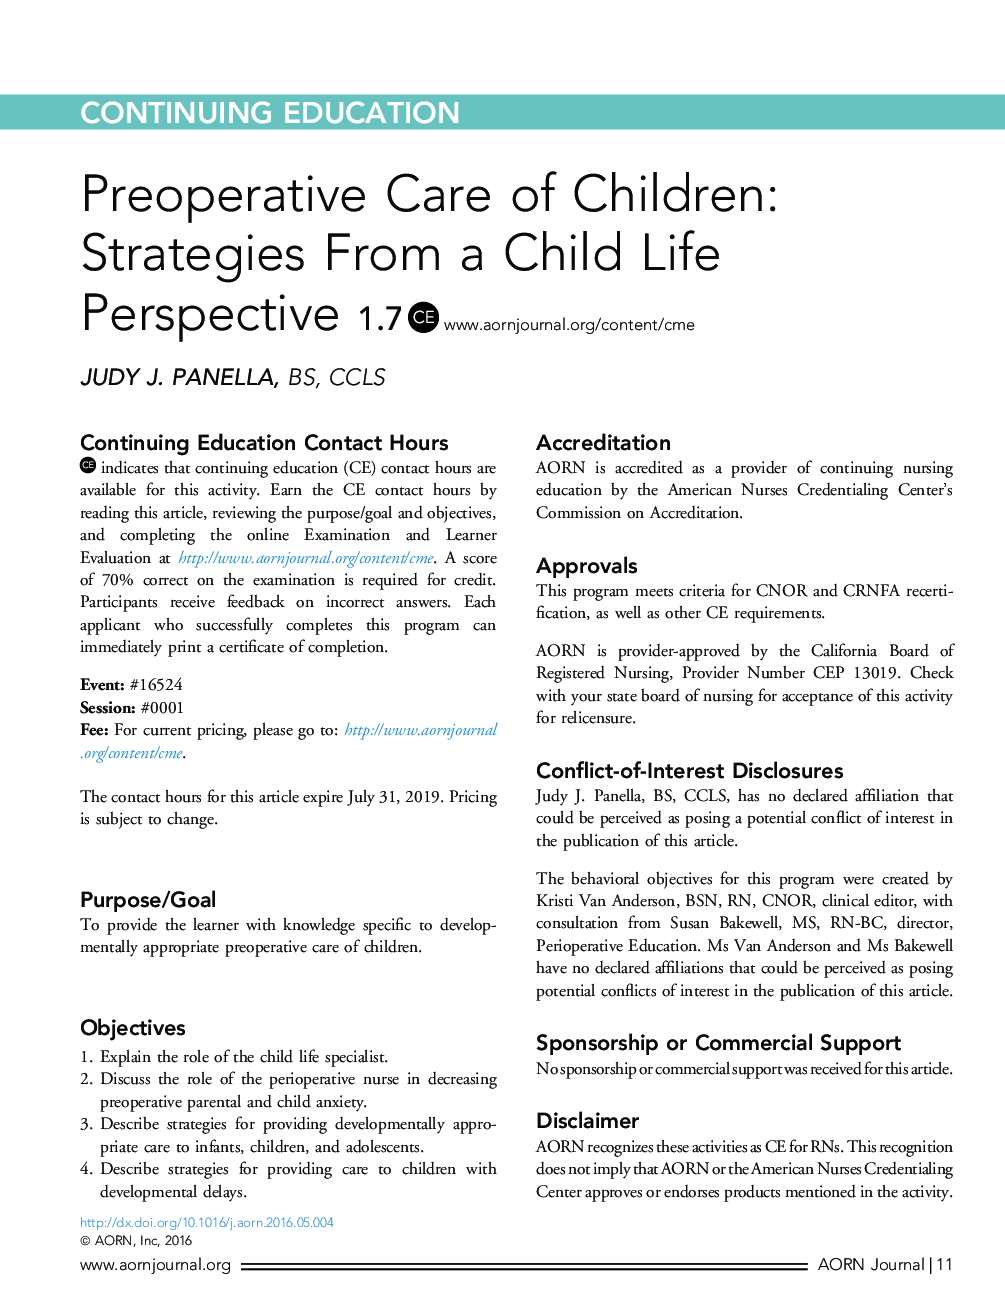 پیشگیری از مراقبت از کودکان: استراتژی های چشم انداز زندگی کودکان 